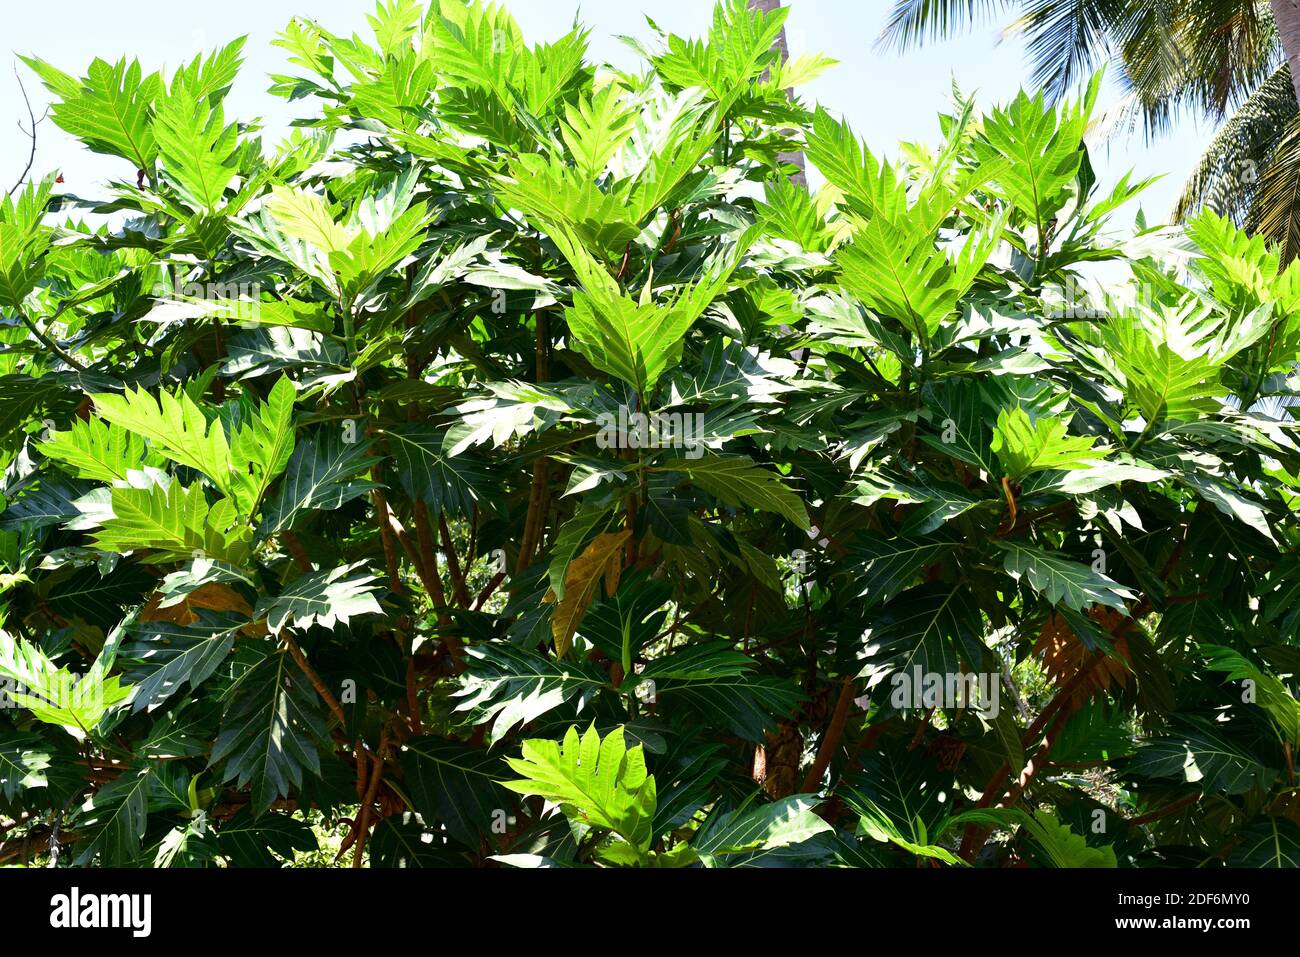 Il frutto del pane (Artocarpus altilis) è un albero originario del Pacifico meridionale ma coltivato in altre regioni tropicali per i suoi frutti e semi commestibili. Questo Foto Stock